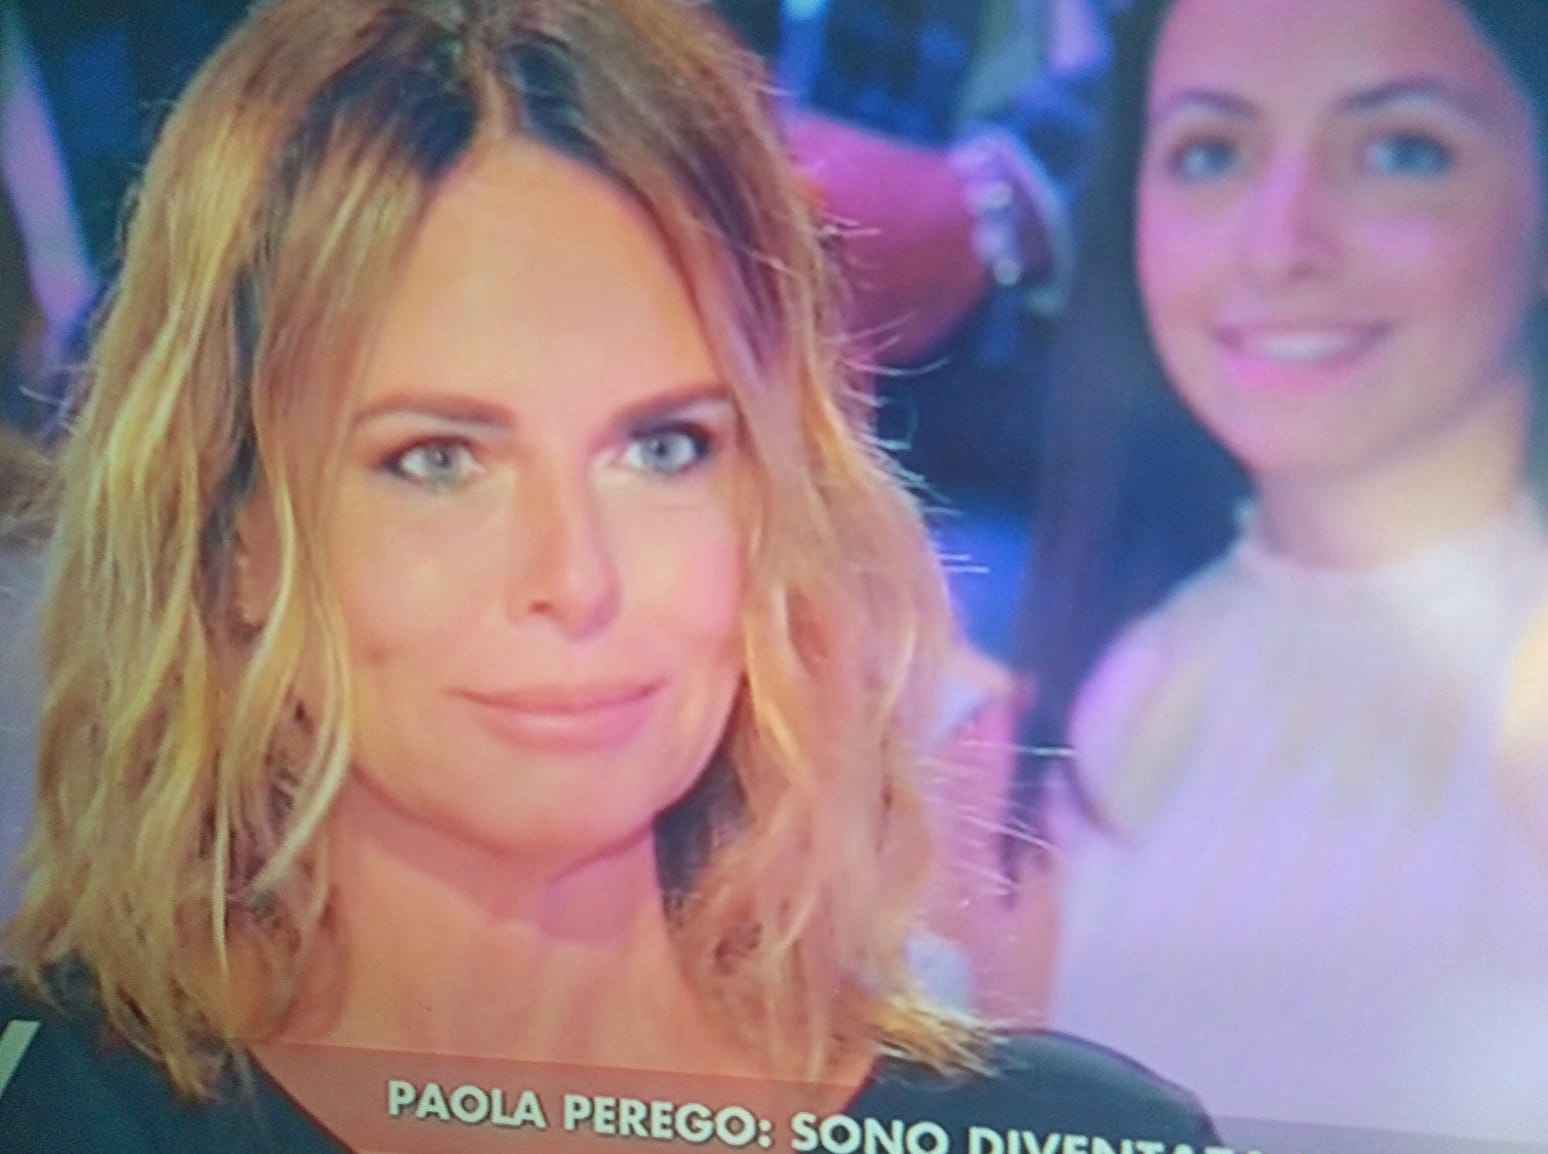 Paola Perego confessione Canale 5 Verissimo